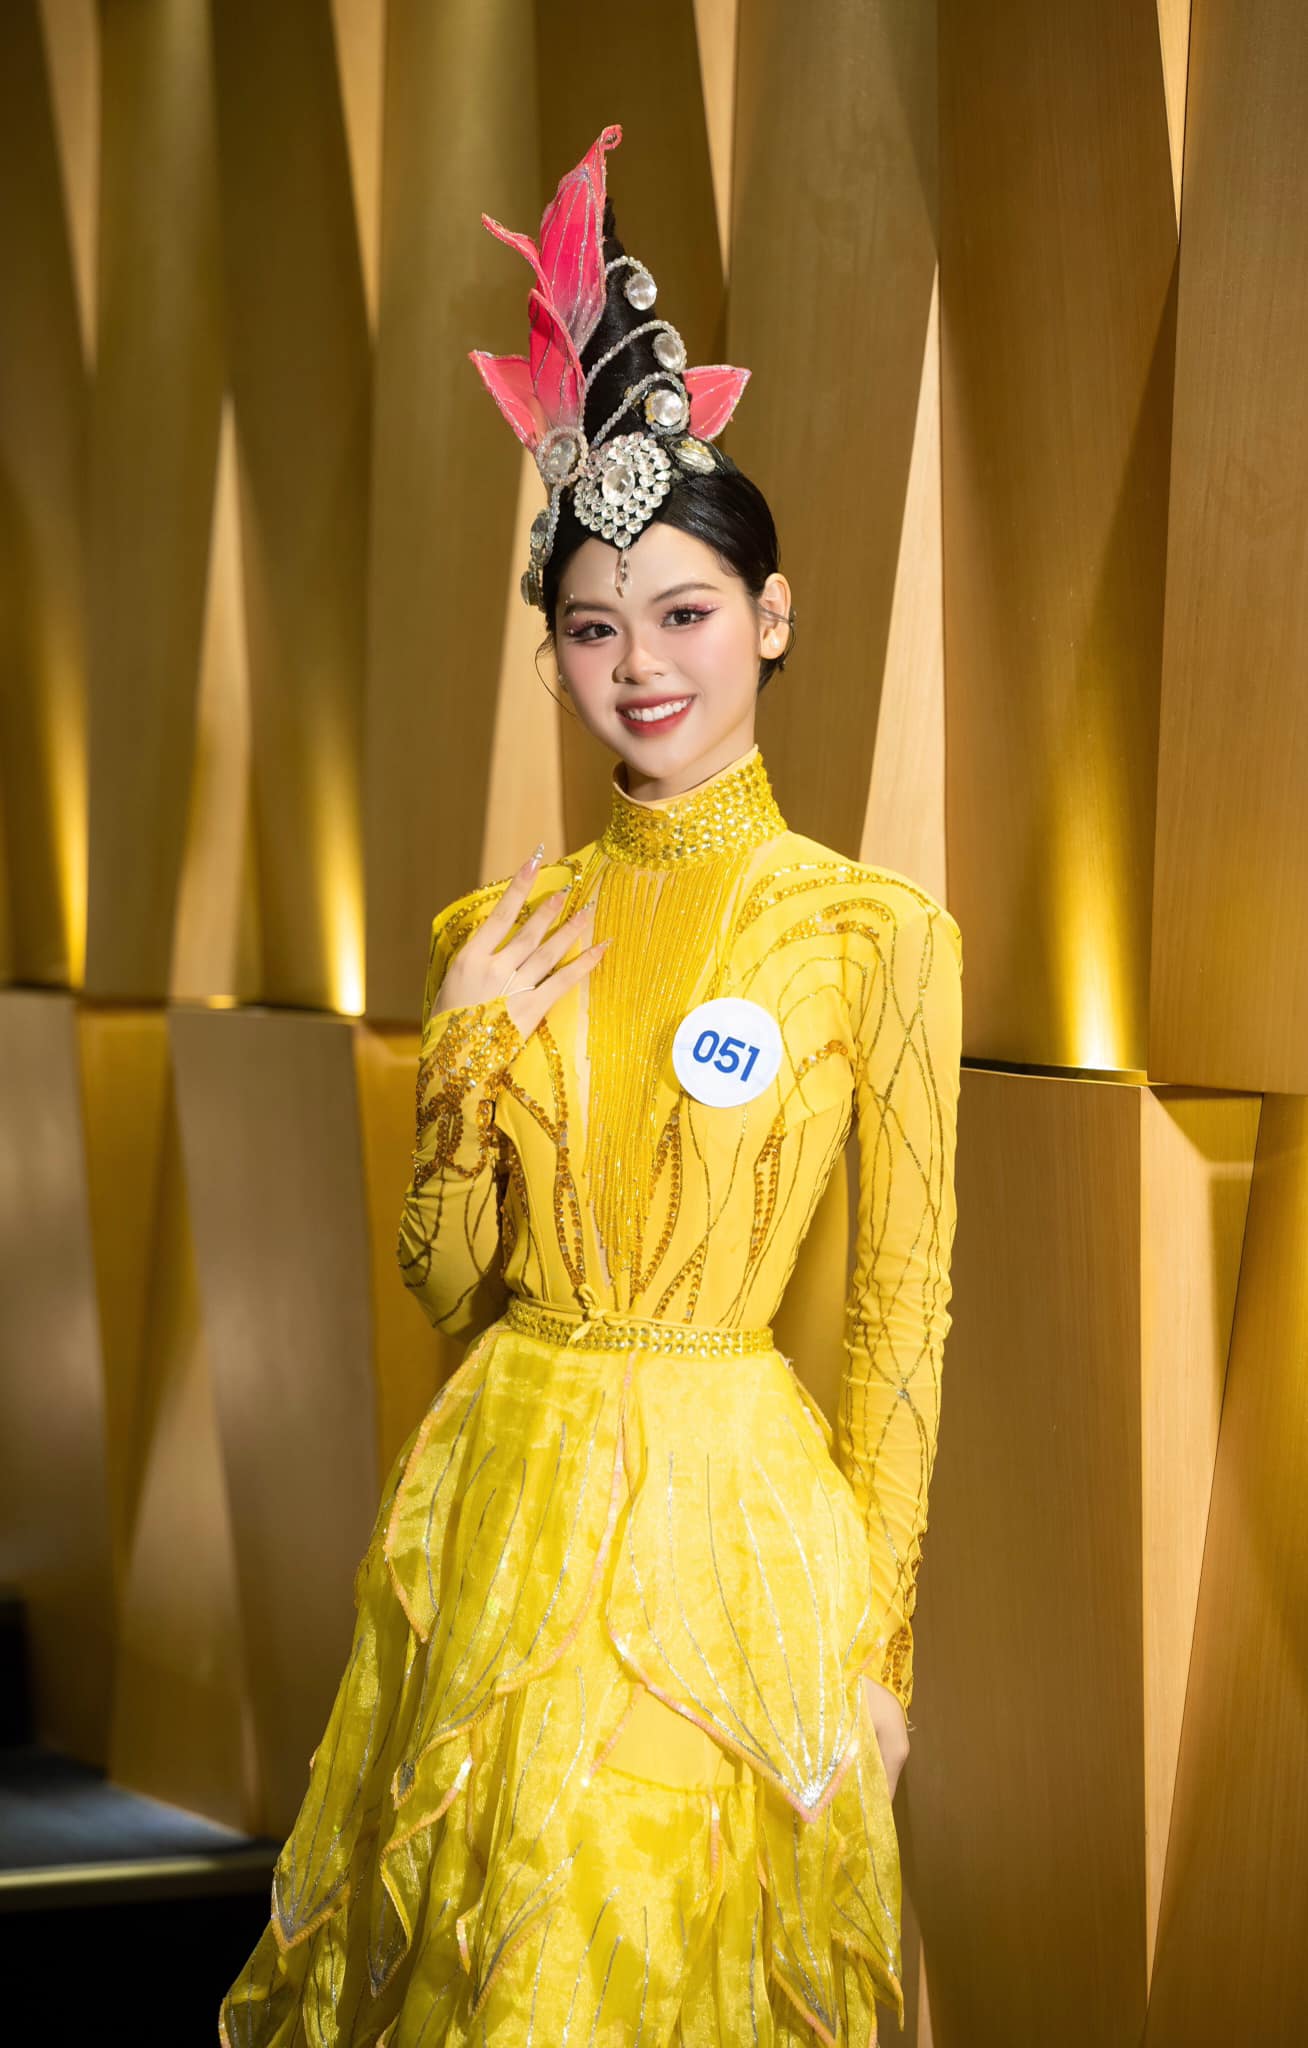 Nhan sắc xinh đẹp, lôi cuốn của thí sinh cao 1,7m vào thẳng Top 20 Miss World Vietnam 2023 - Ảnh 2.